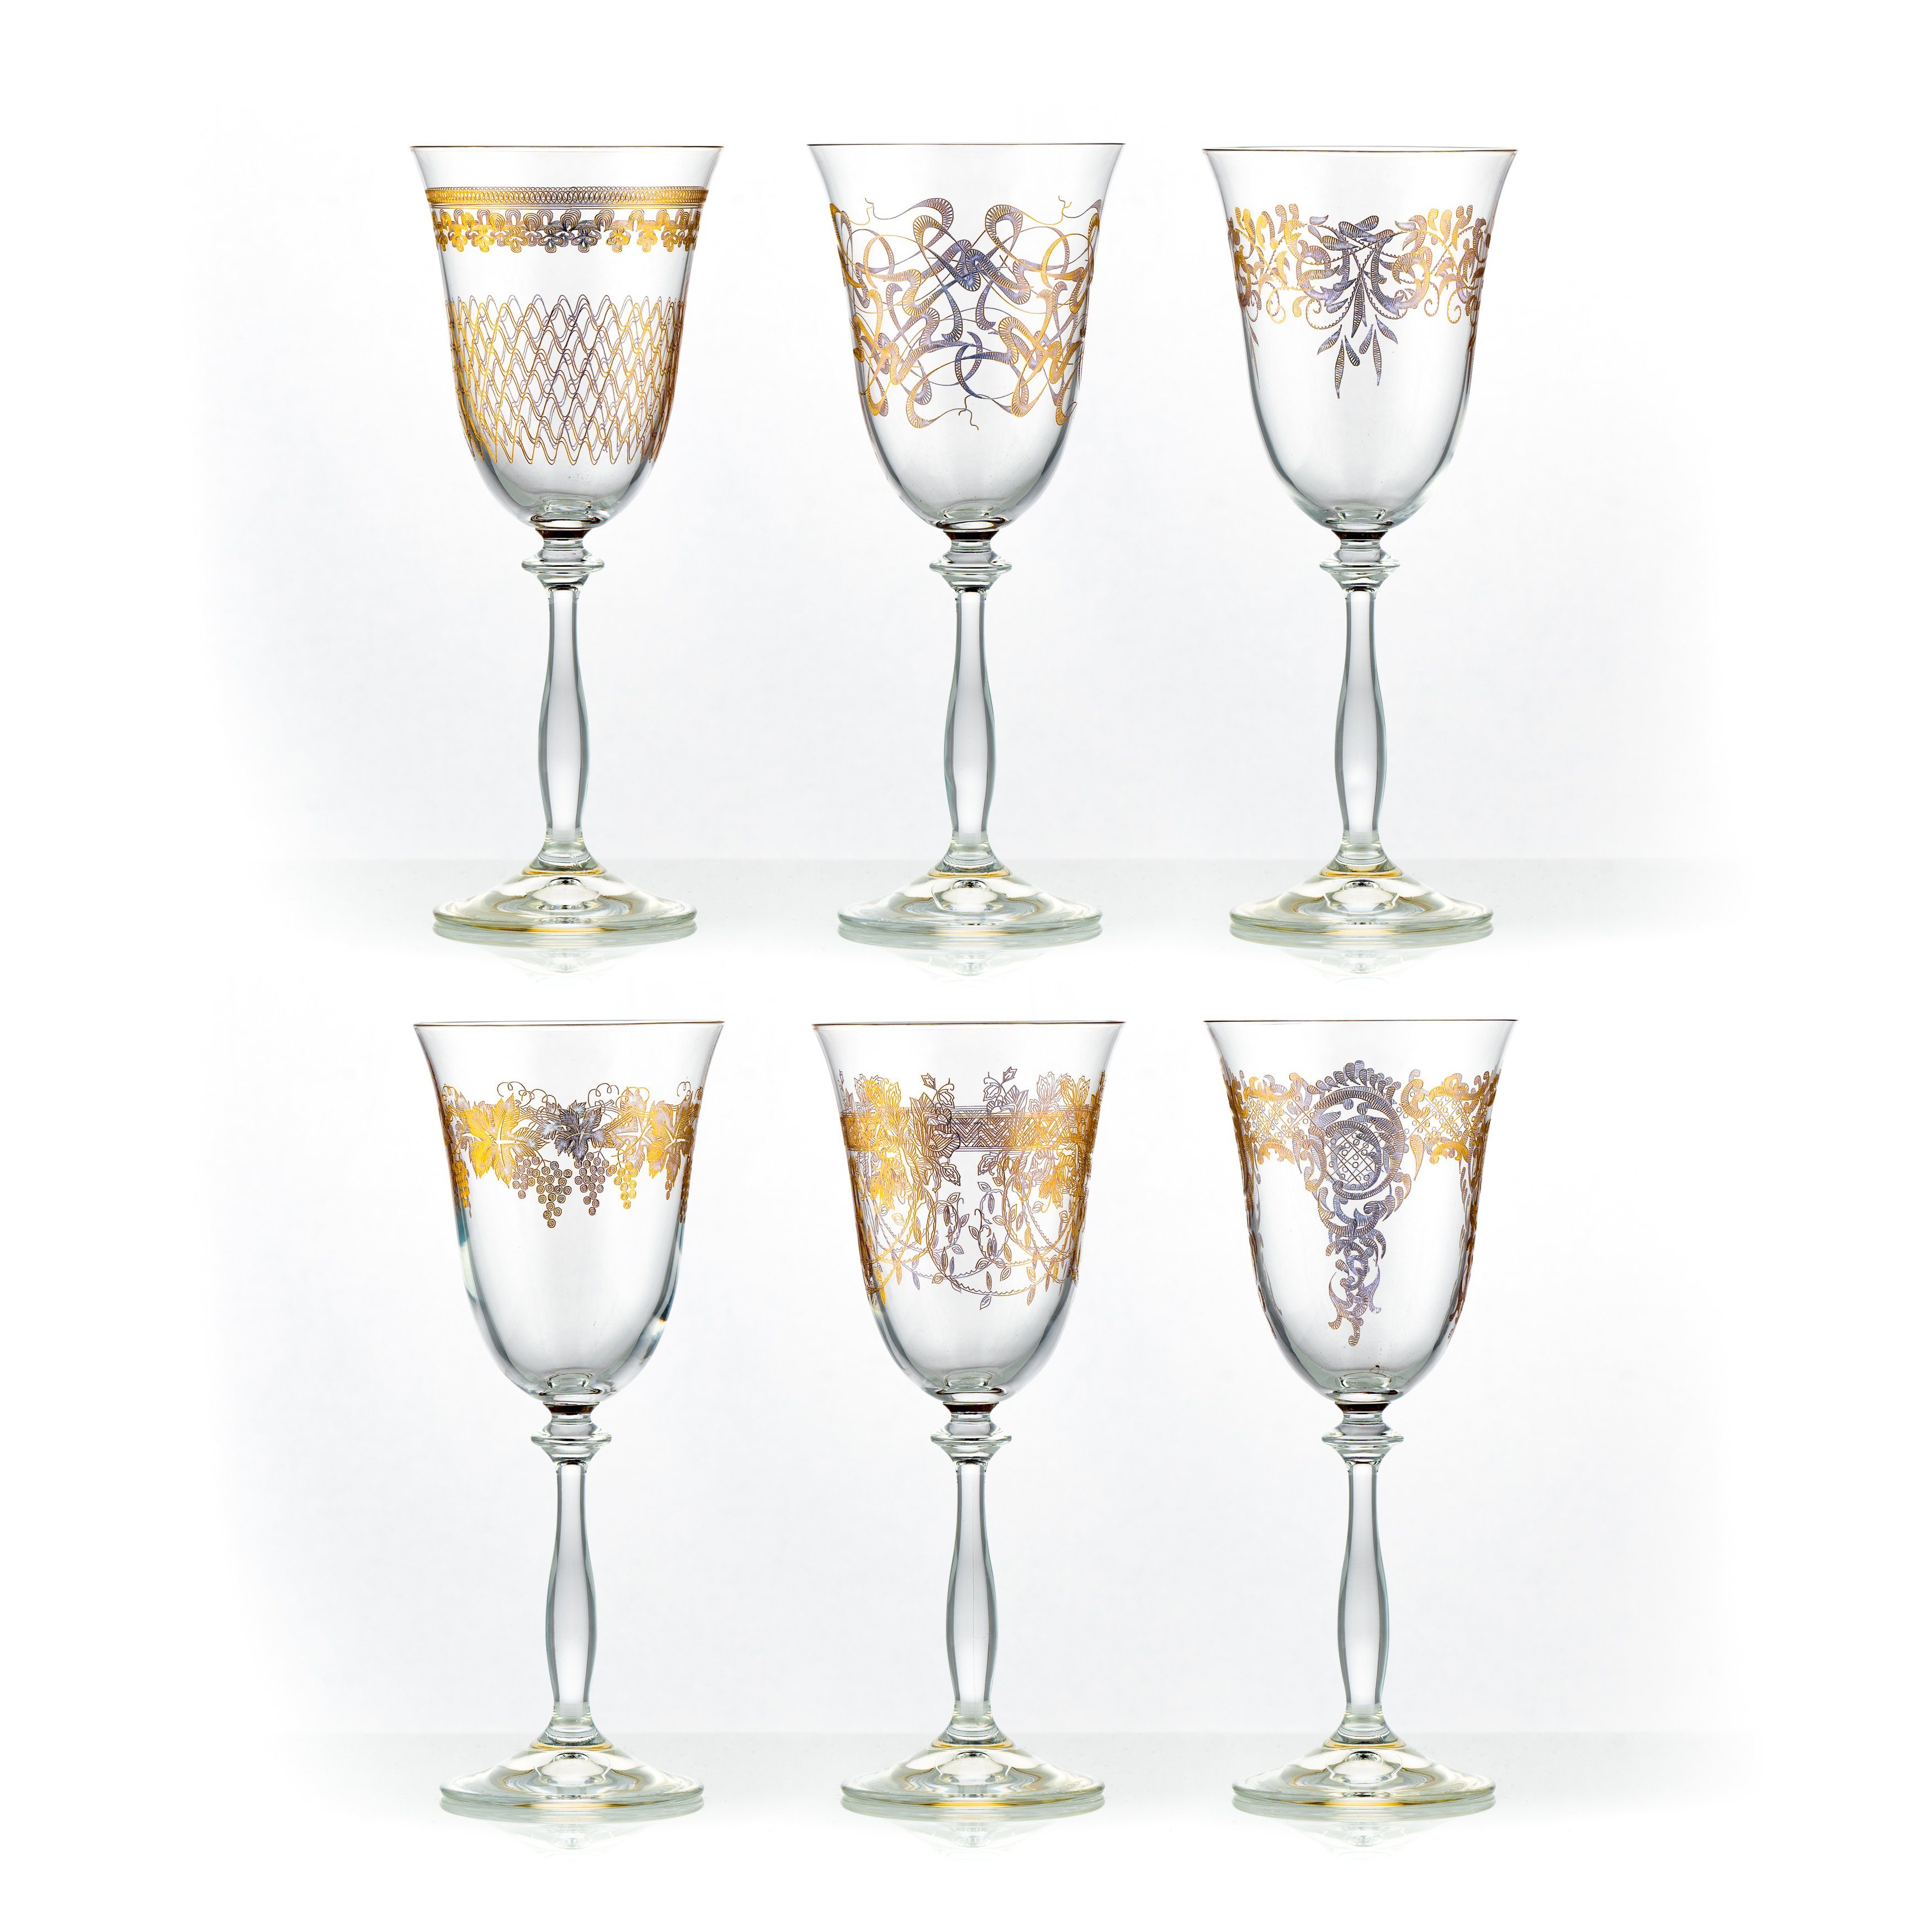 Crystalex Weißweinglas Weißweingläser Royal 250 ml 6er Set, Kristallglas, 6 verschiedene Ornamente aus pantografie